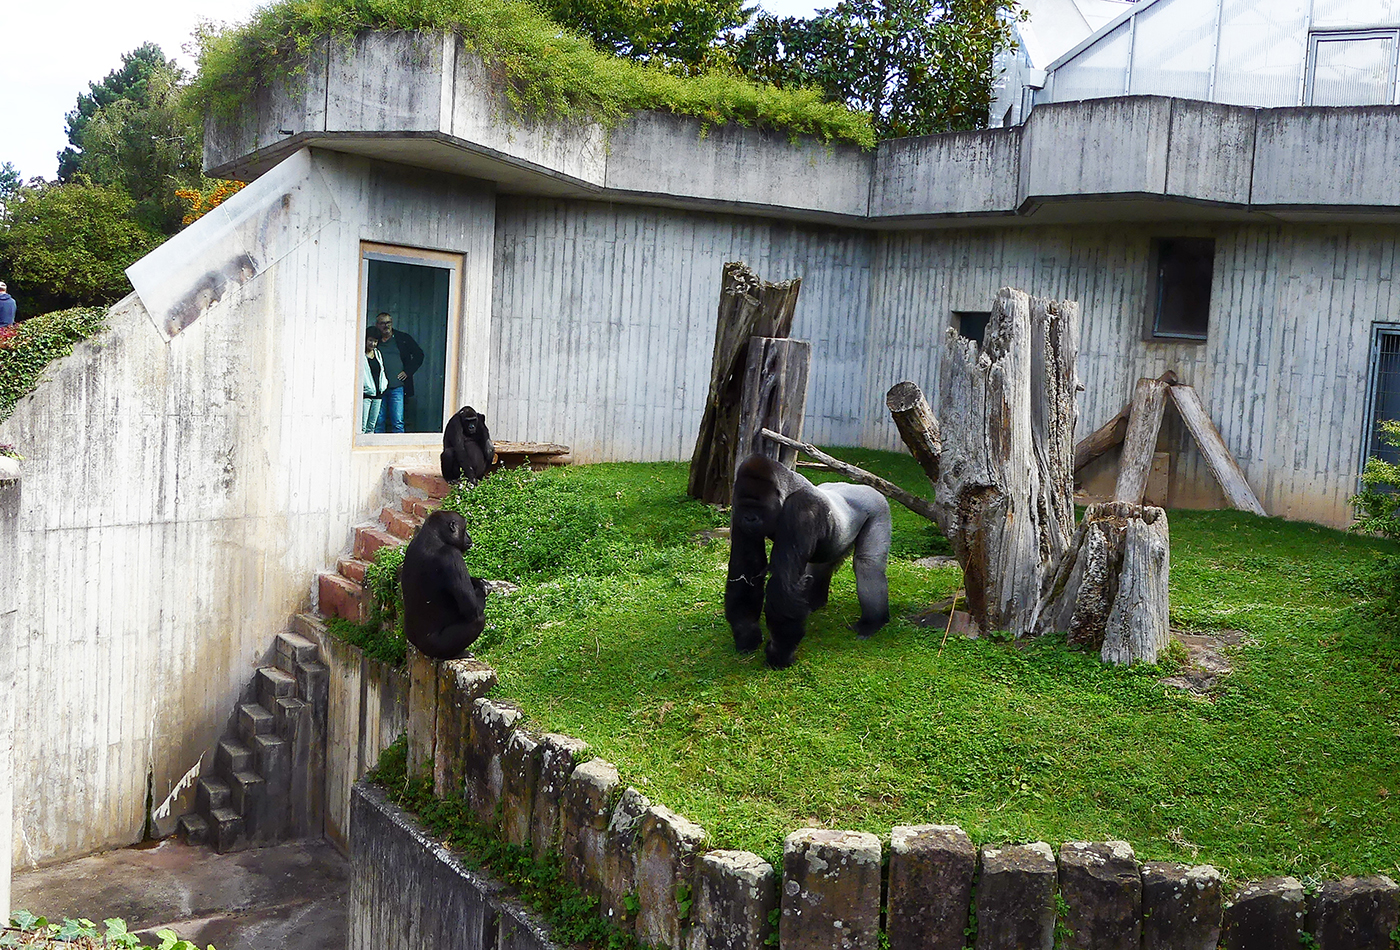 Für die Heidelberger Gorillagruppe soll eine neue Außenanlage gebaut werden. Für den Umbau sammelten die Tiergartenfreunde Heidelberg weitere Spendengelder in Höhe von 30.000 Euro. (Foto: Petra Medan/Zoo Heidelberg)